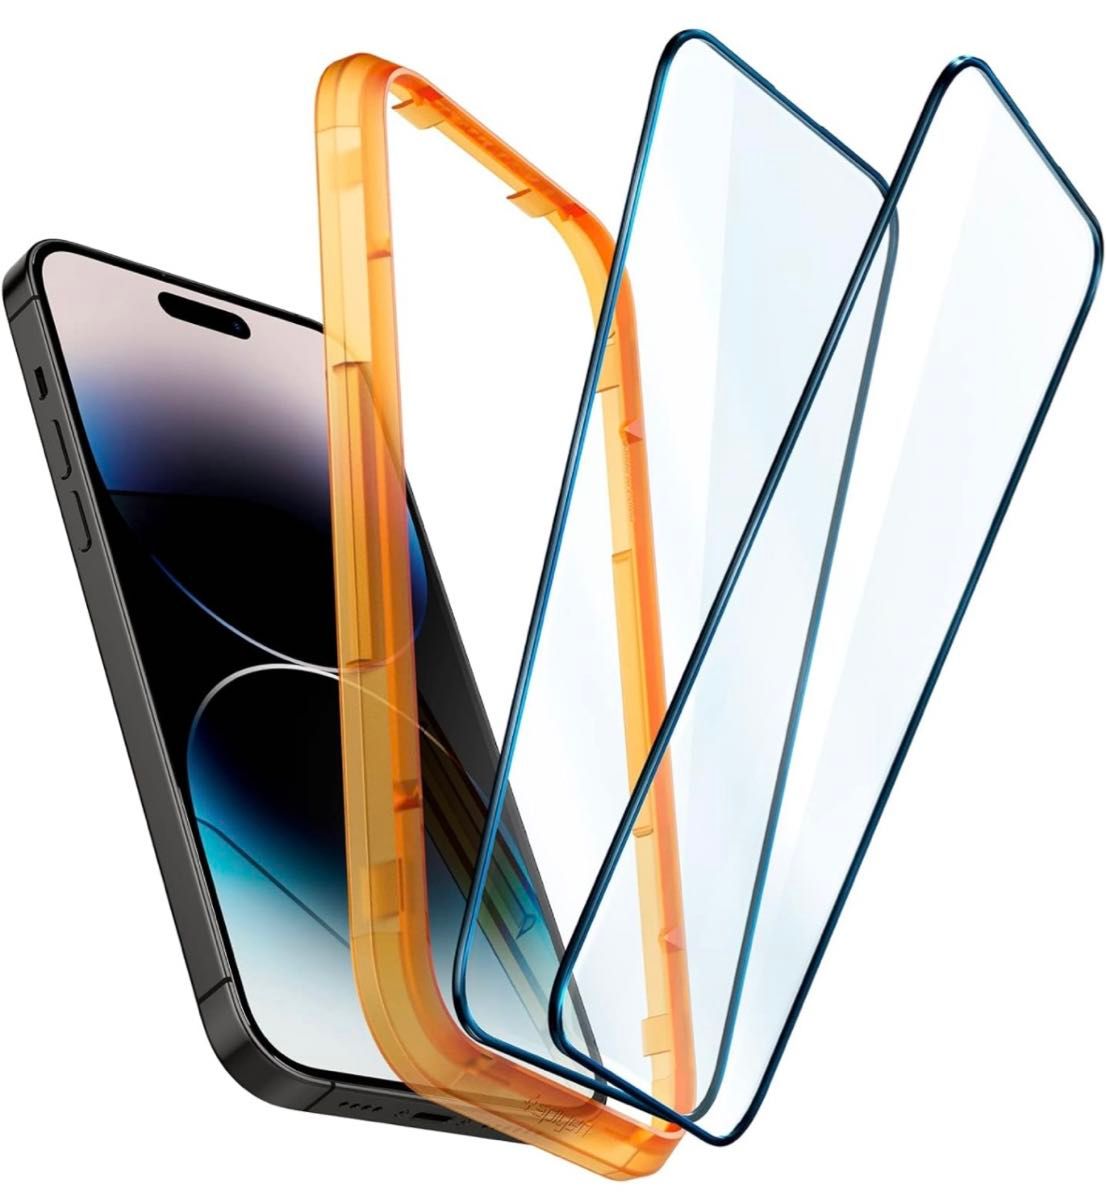 Spigen AlignMaster 全面保護 ガラスフィルム ガイド枠付き iPhone14Pro 対応 保護 2枚入